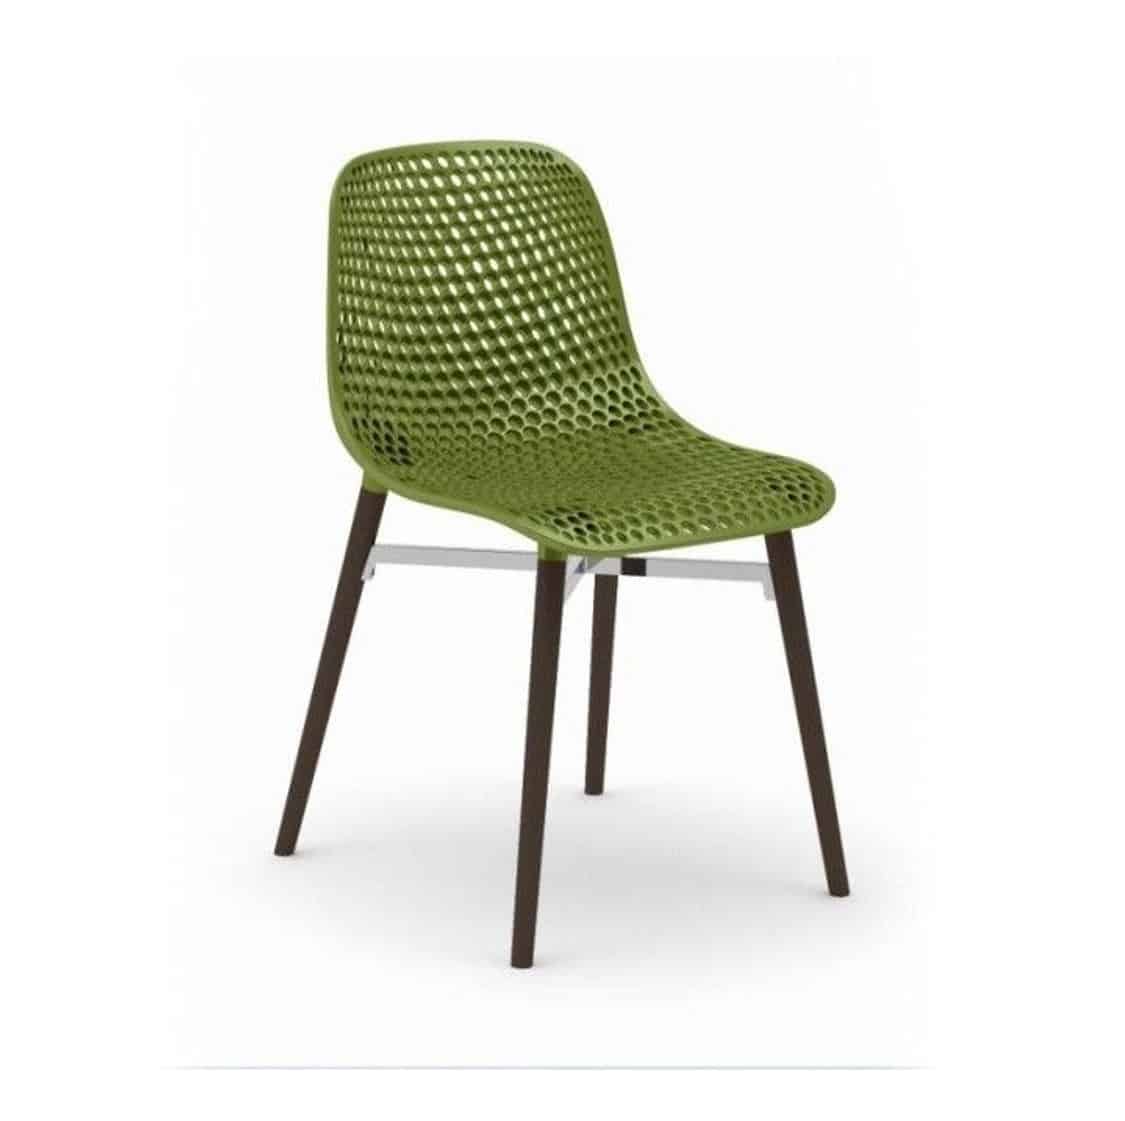 Next the chair. Стул пластиковый зеленый. Пластиковый стул с изогнутой спинкой. Пластиковый стул без ножек. Стул зеленый с деревянными ножками.